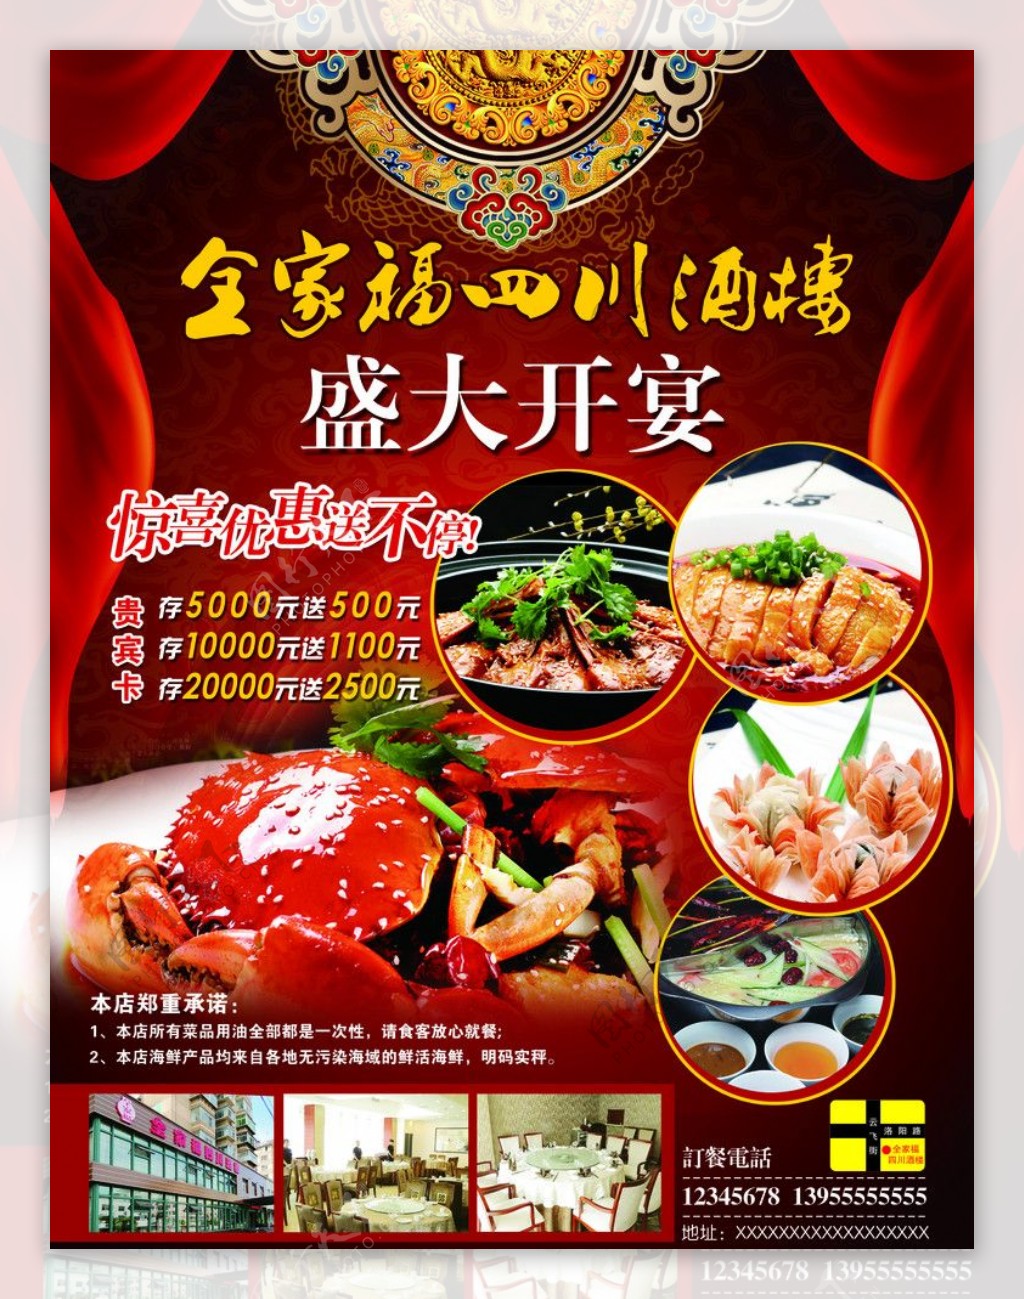 全家福四川酒楼盛大开宴宣传海报图片